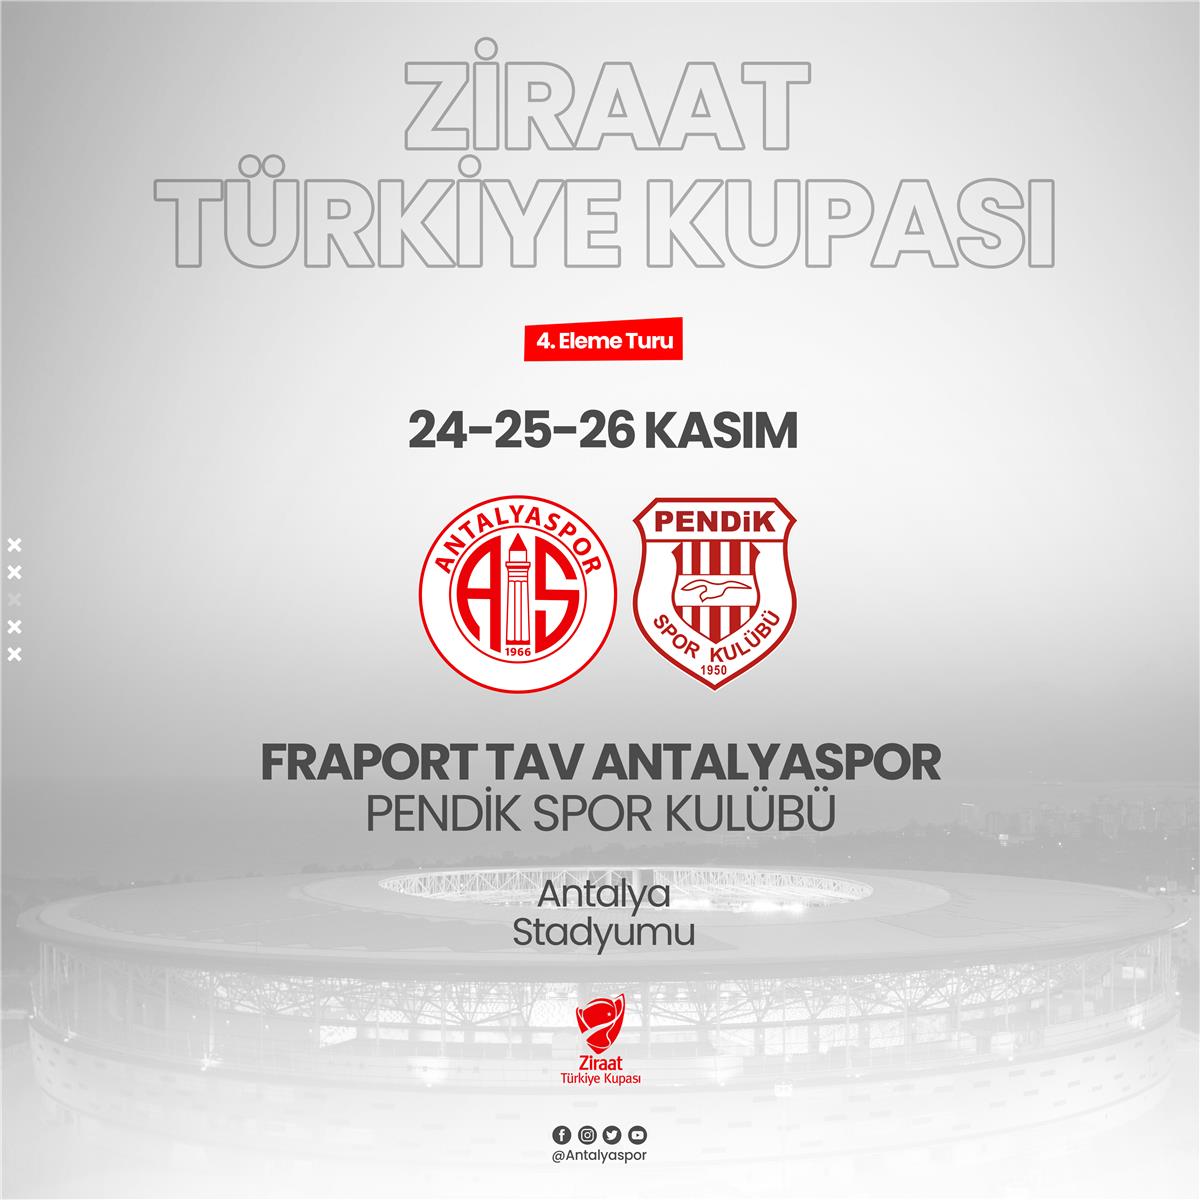 Ziraat Türkiye Kupası'nda Rakibimiz Pendik Spor Kulübü